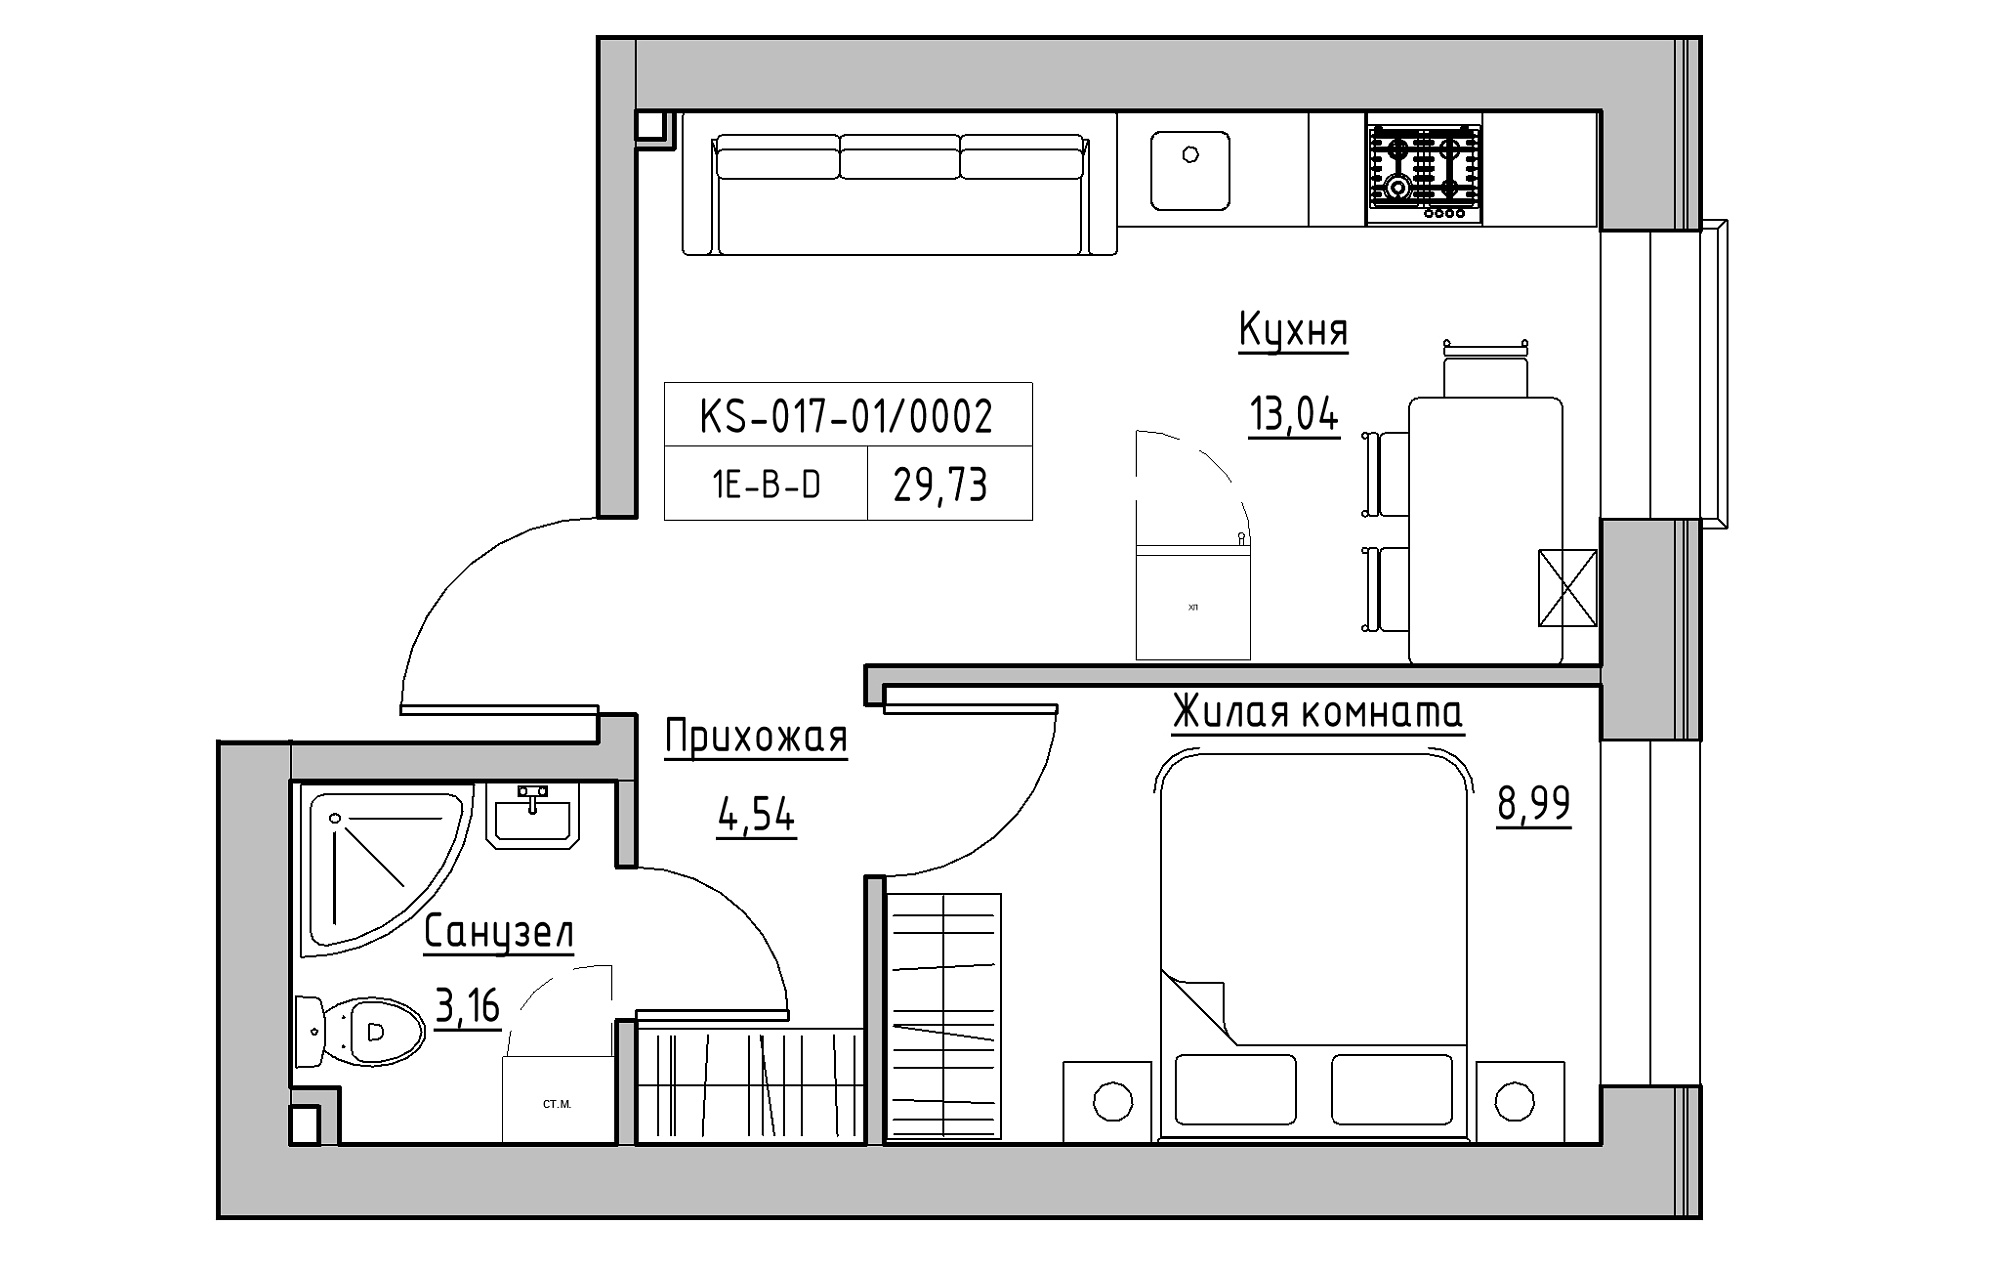 Планування 1-к квартира площею 29.73м2, KS-017-01/0002.